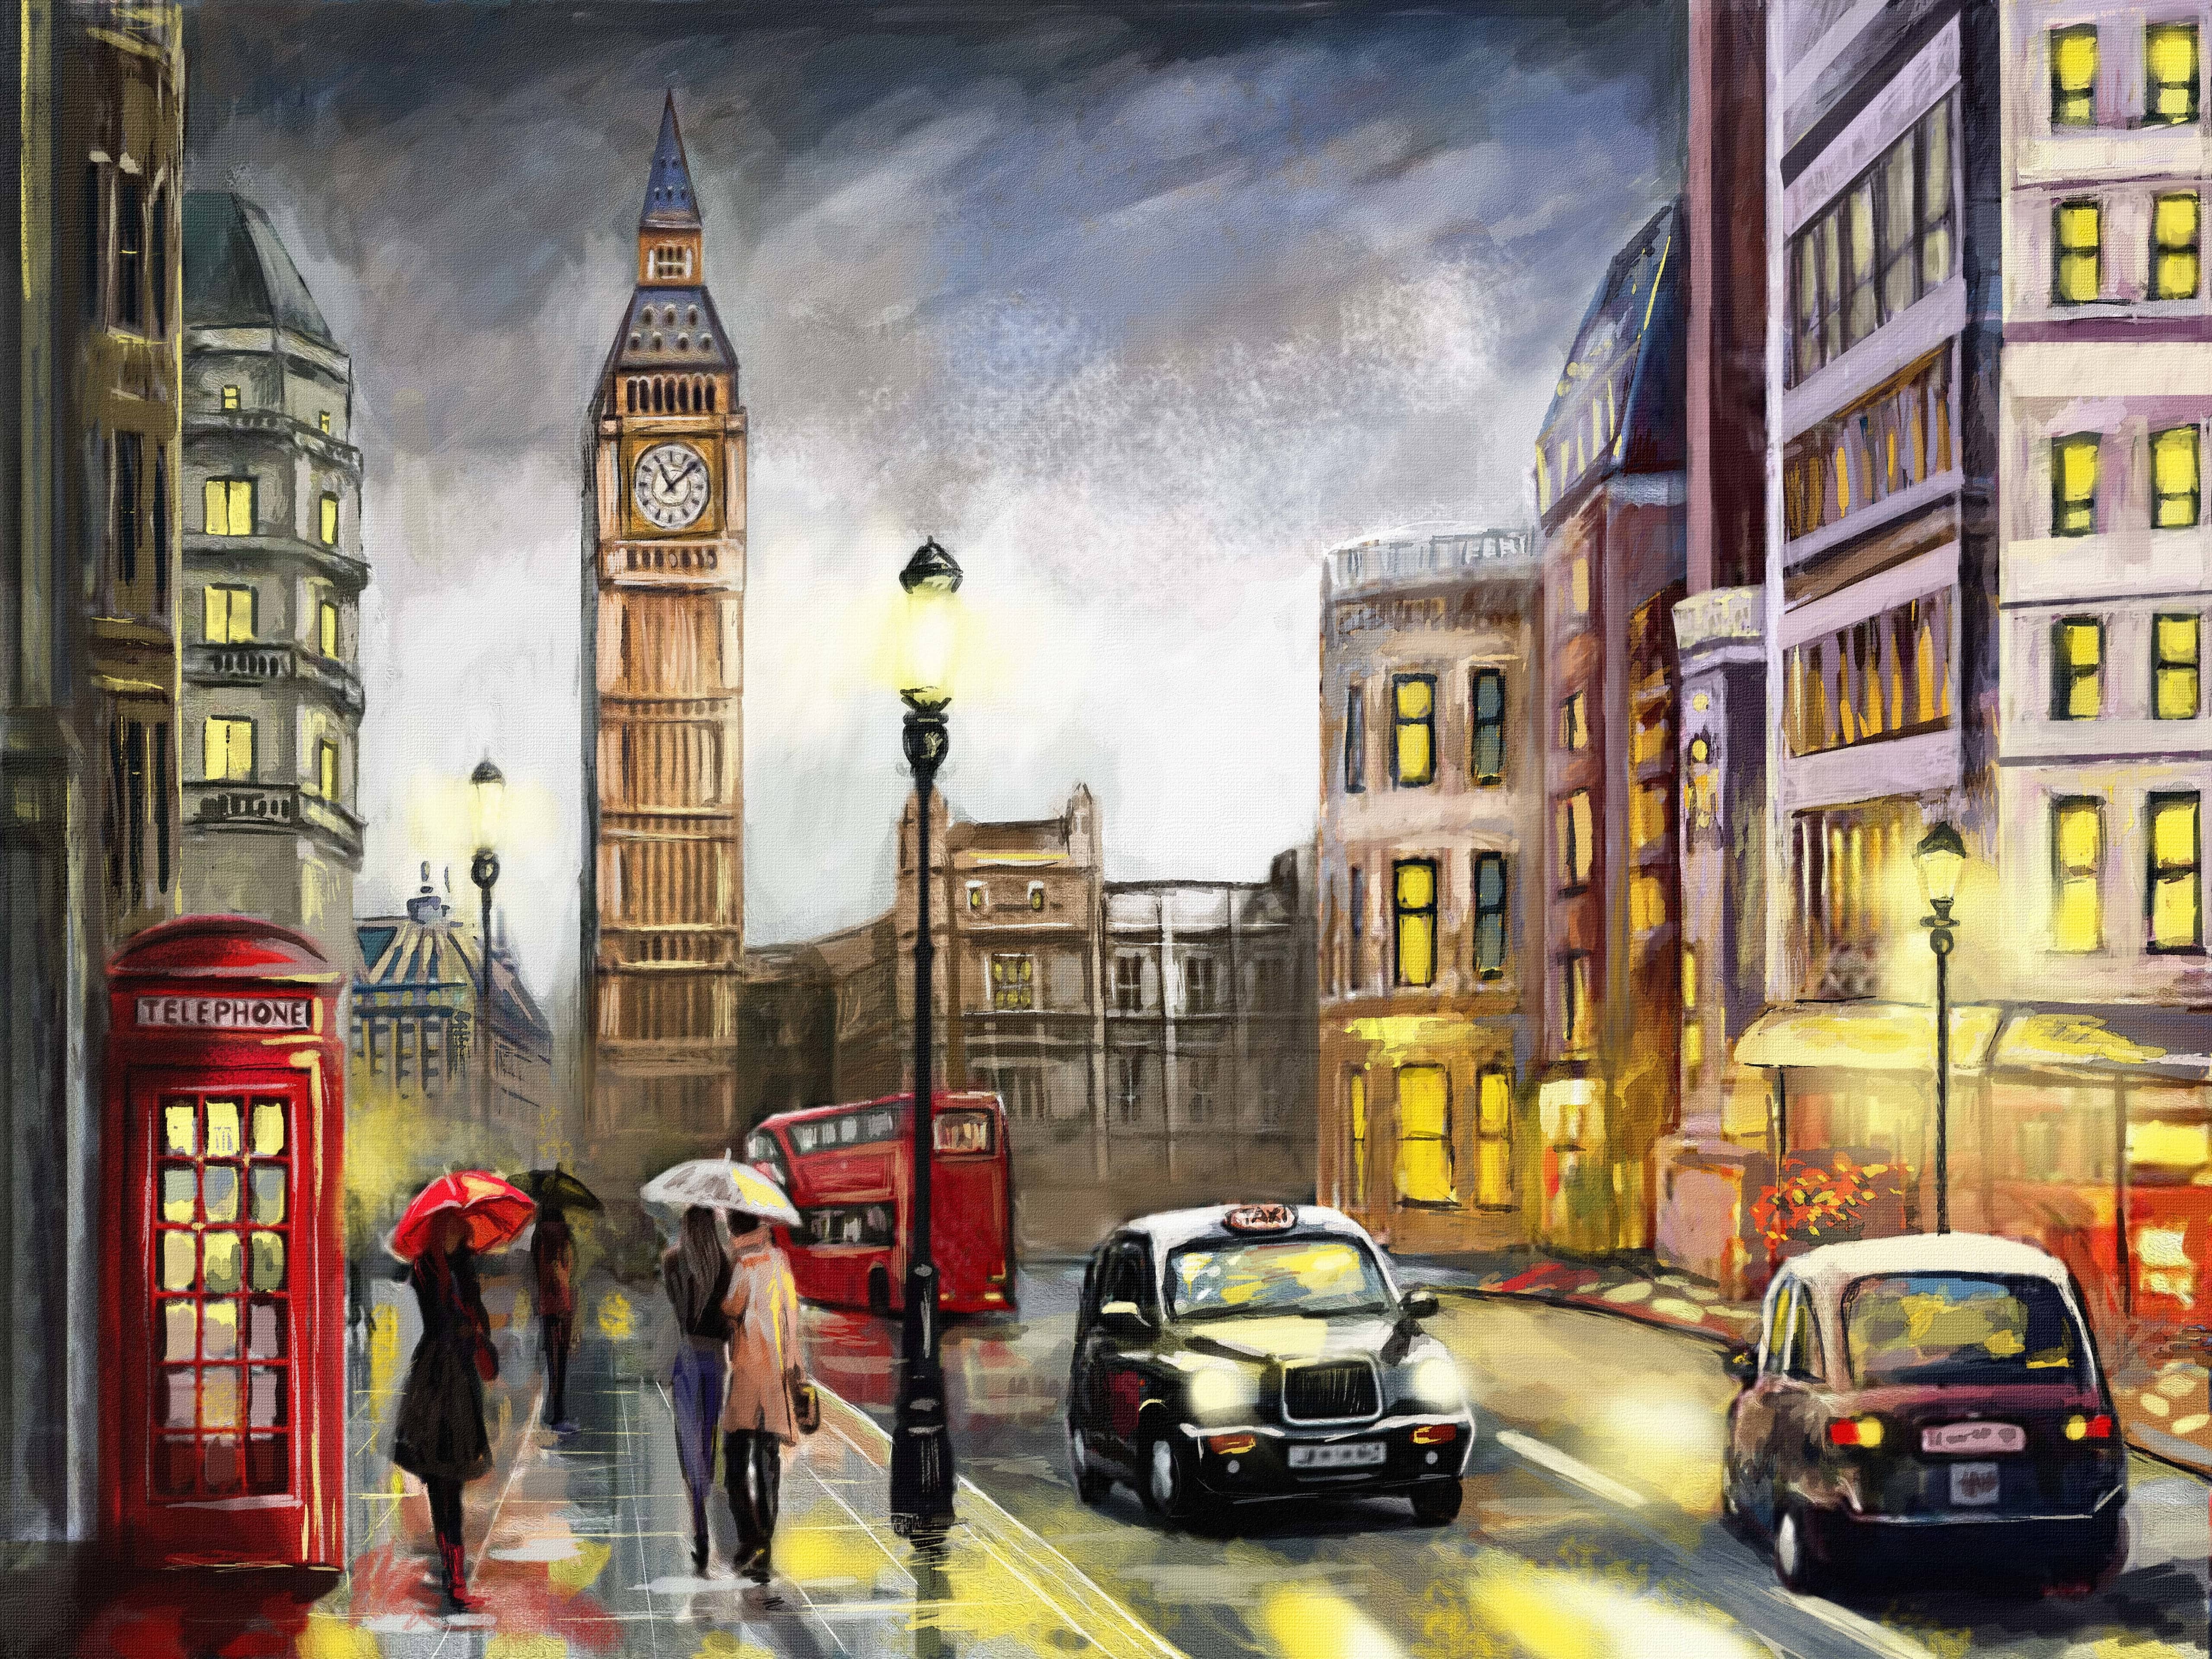 Oil Painting On S Street Of London Premium 4k Wallpaper